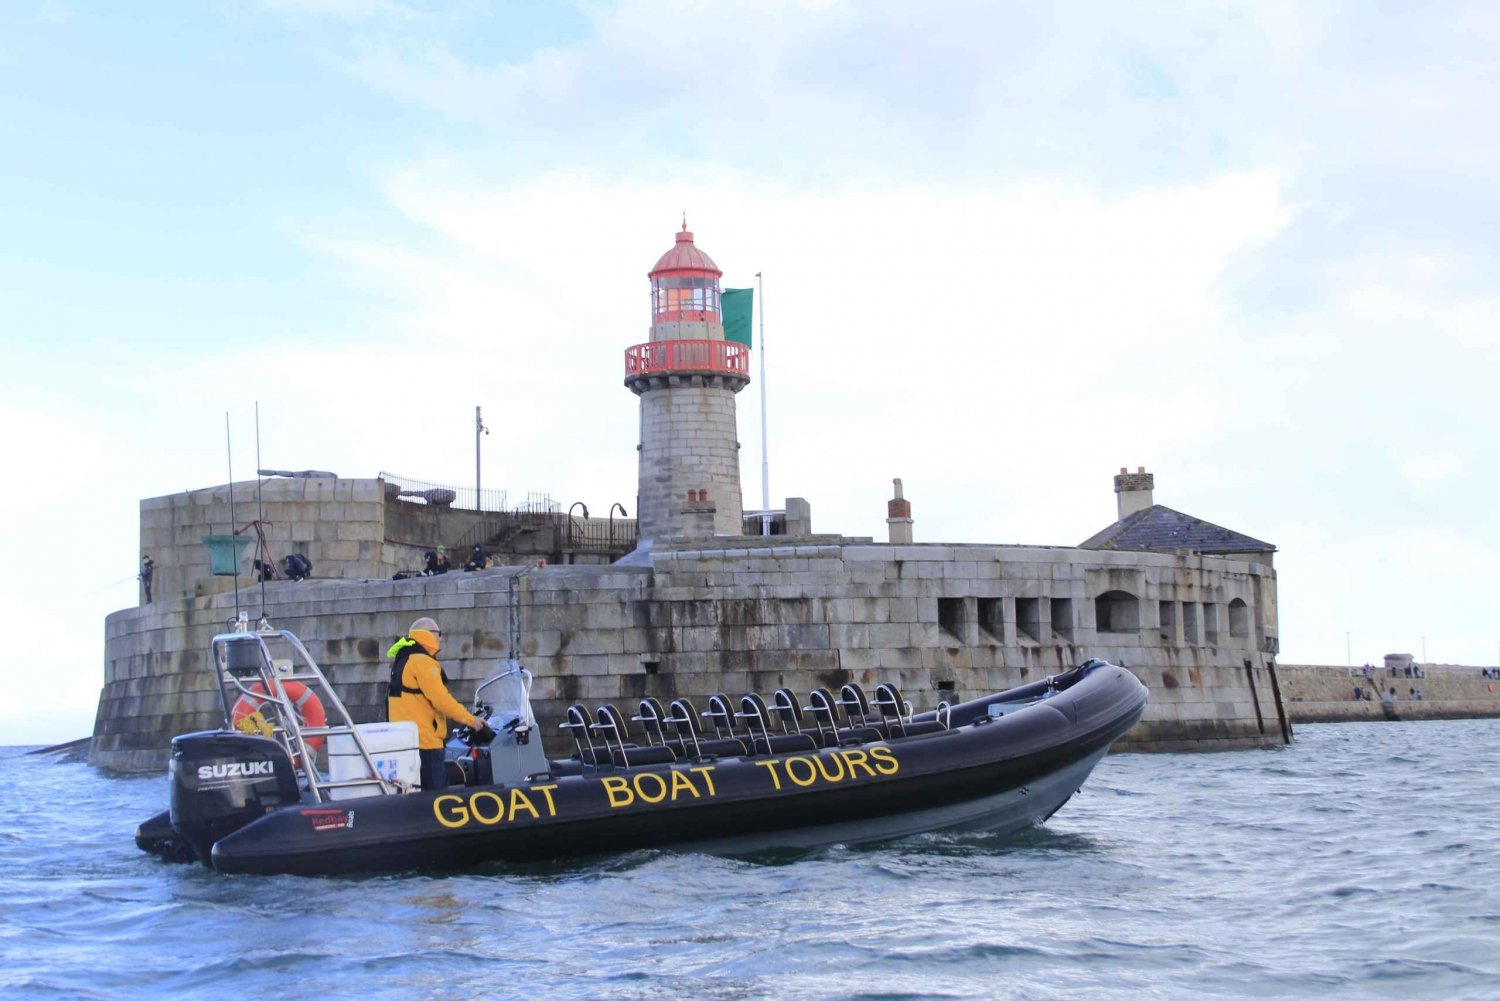 Dublin: passeio de barco pela história e vida selvagem com comentários ao vivo